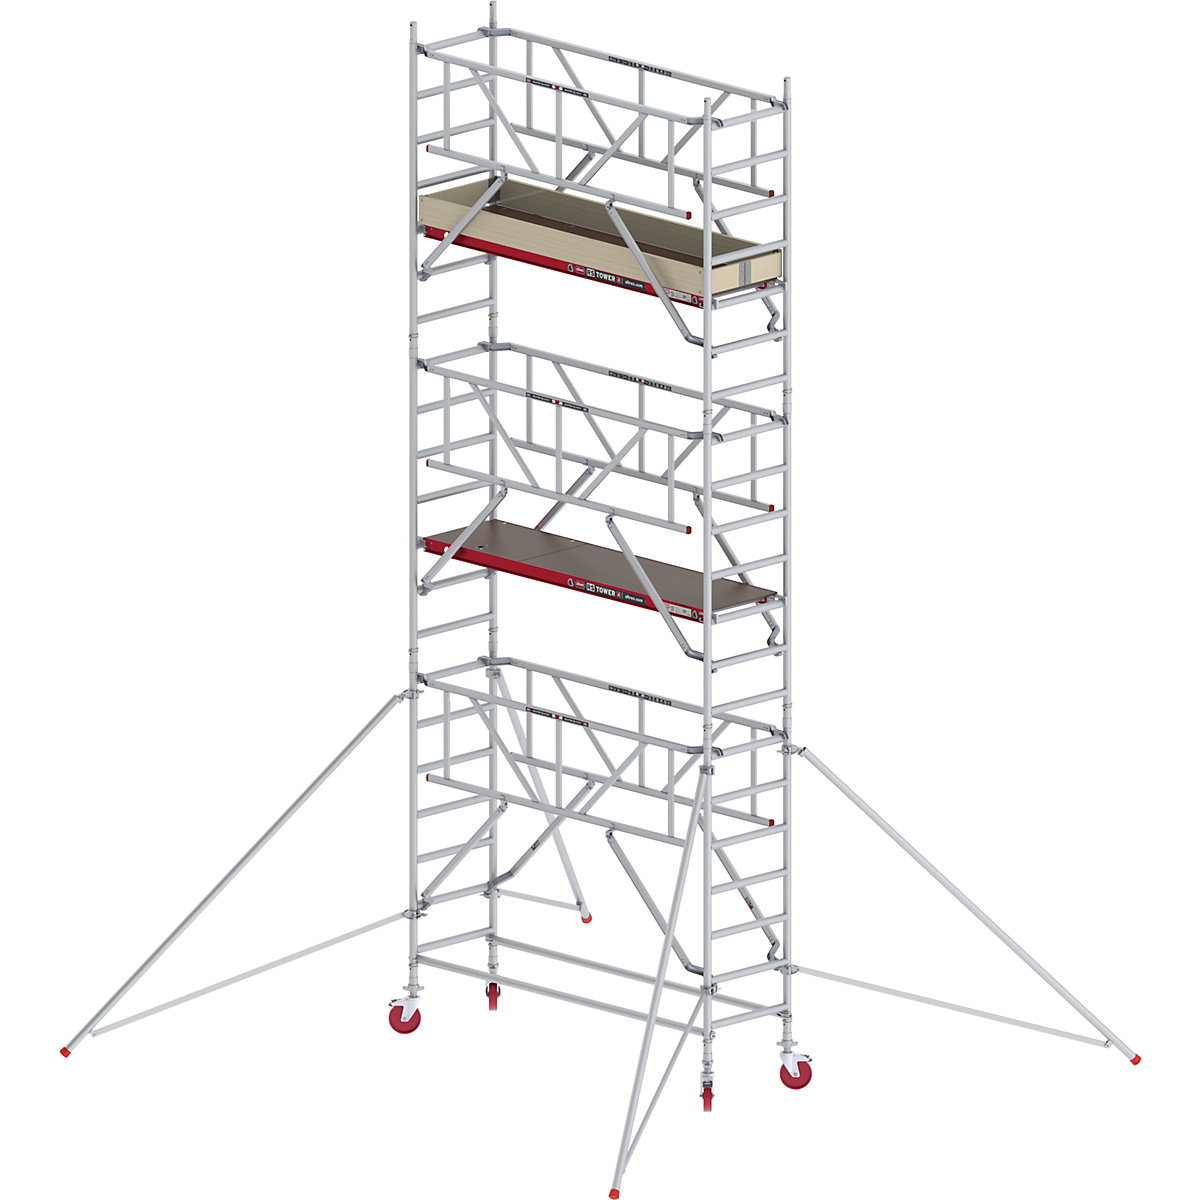 Rusztowanie ruchome RS TOWER 41, wąskie, z poręczą Safe-Quick® – Altrex, platforma drewniana, dł. 1,85 m, wys. robocza 7,20 m-5